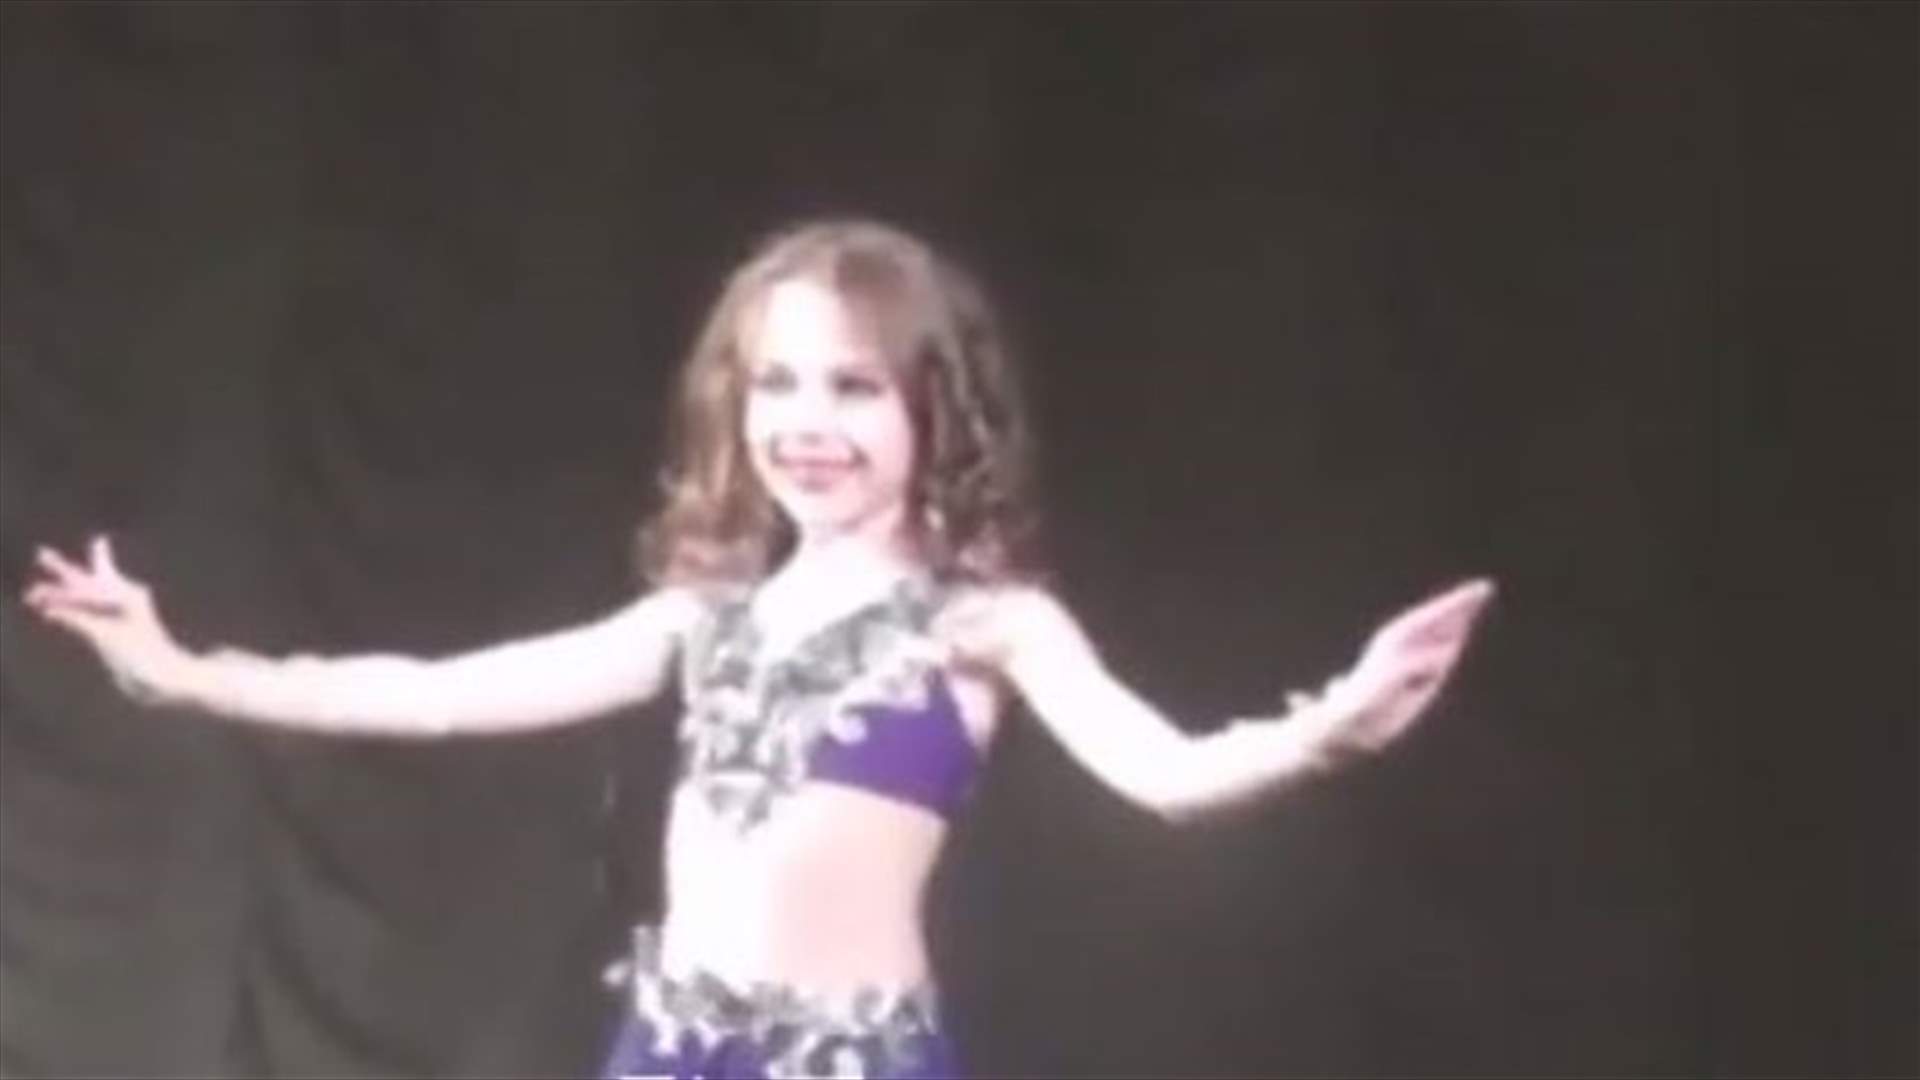 بالفيديو: طفلة تؤدي الرقص الشرقي كالمحترفة!